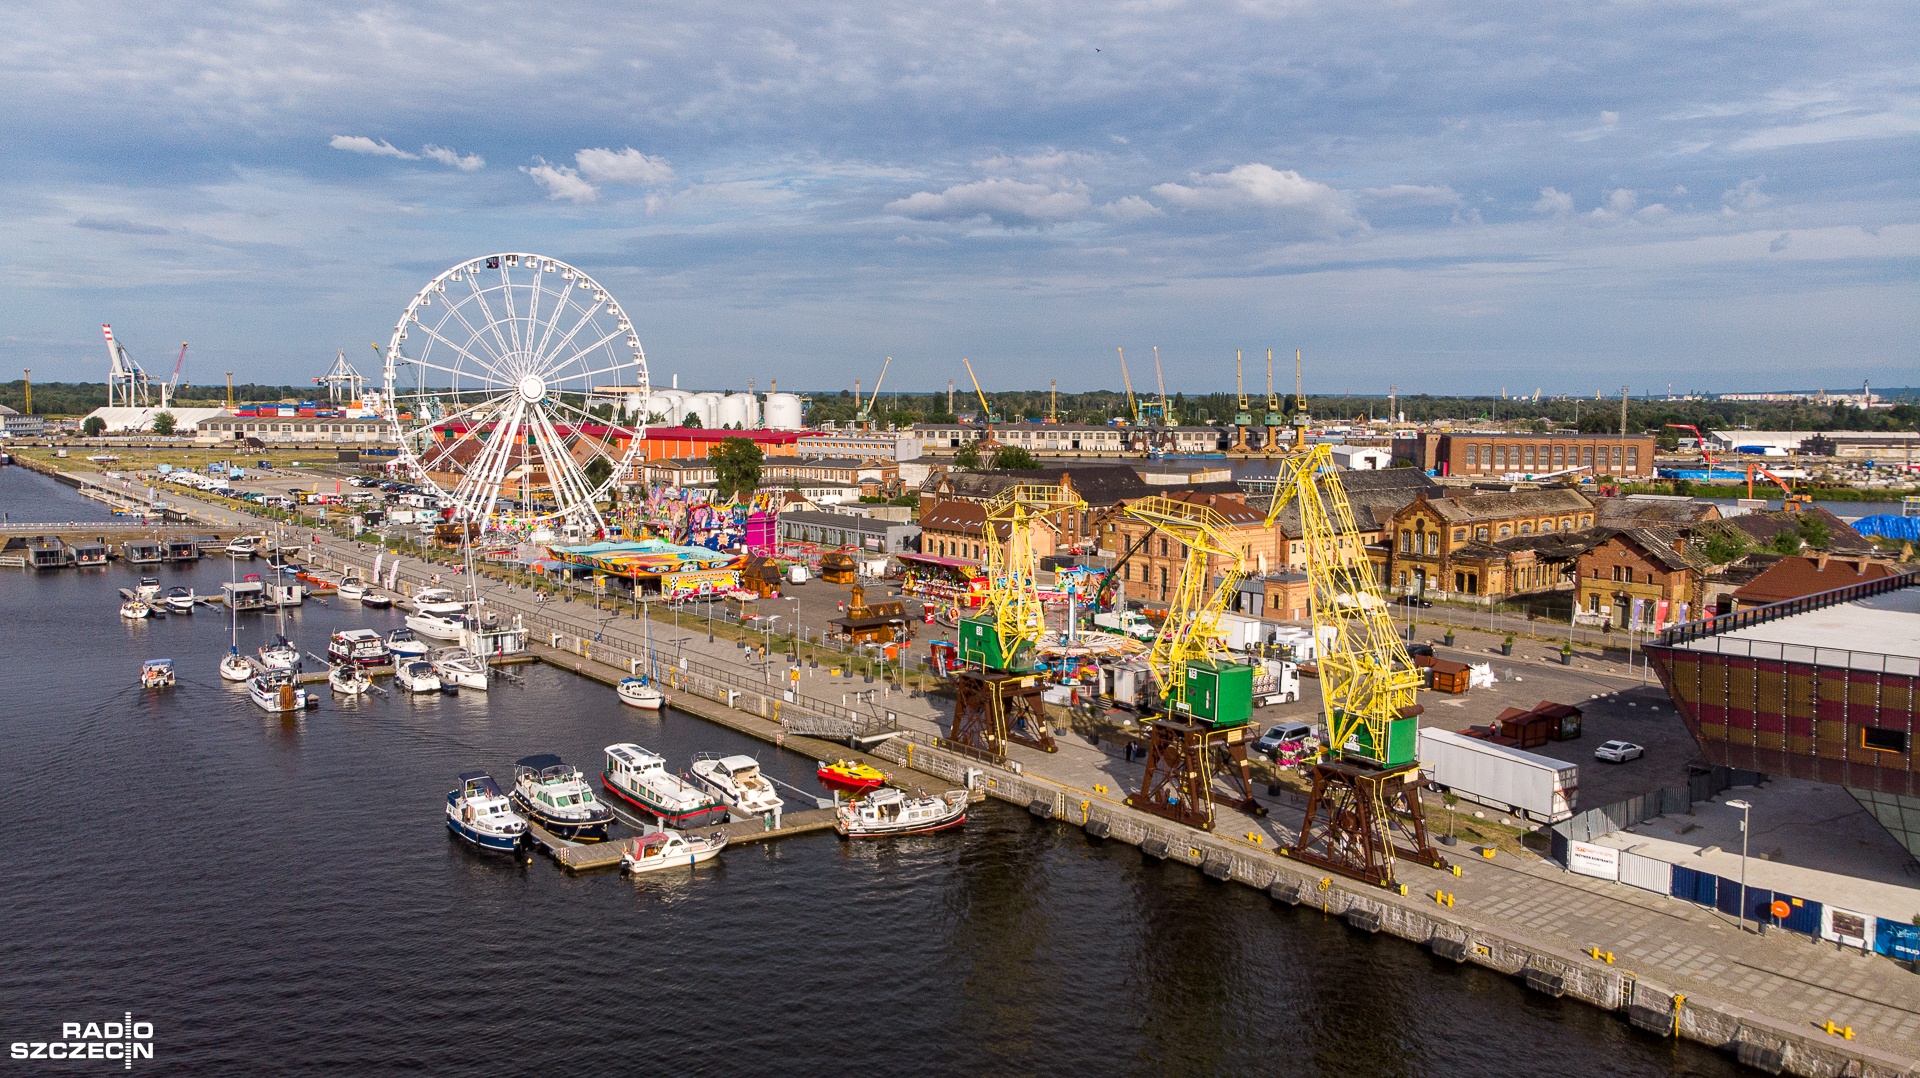 Karuzele, trampoliny, rollercoastery i wiele innych atrakcji od dziś na szczecińskiej Łasztowni. Park rozrywki otwarty będzie przez całe wakacje.